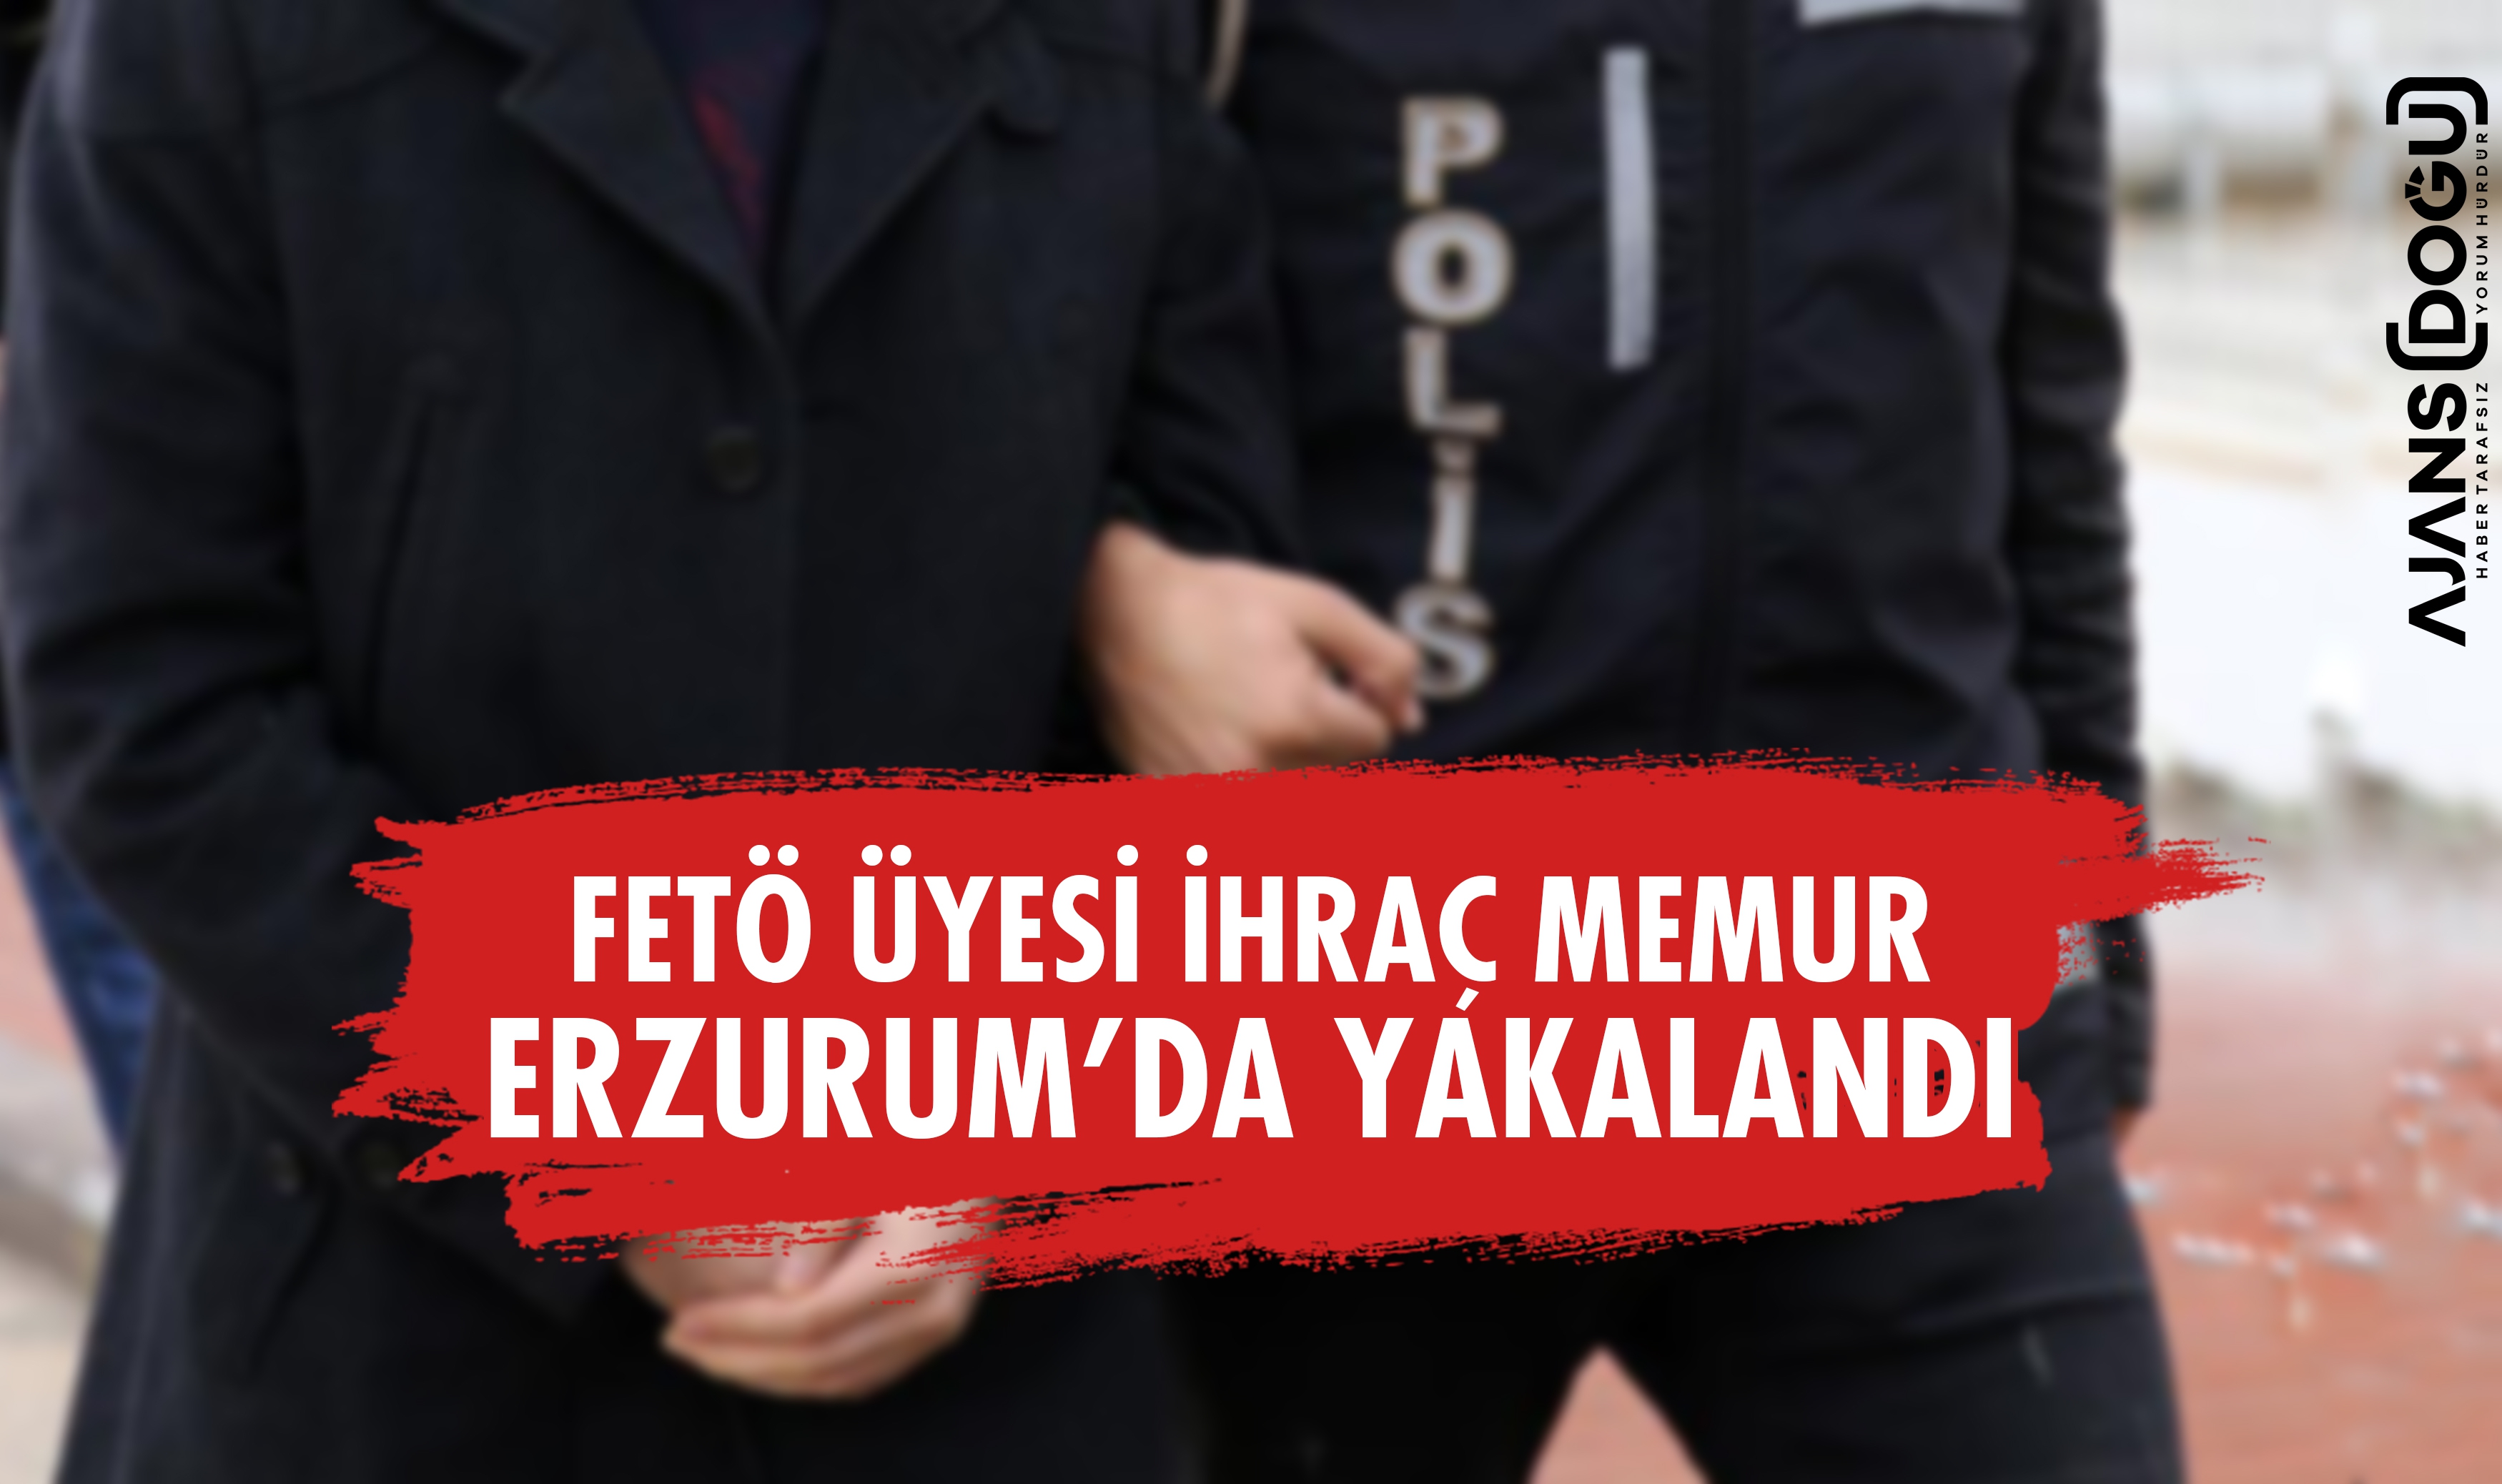 FETÖ üyesi ihraç memur Erzurum'da yakalandı